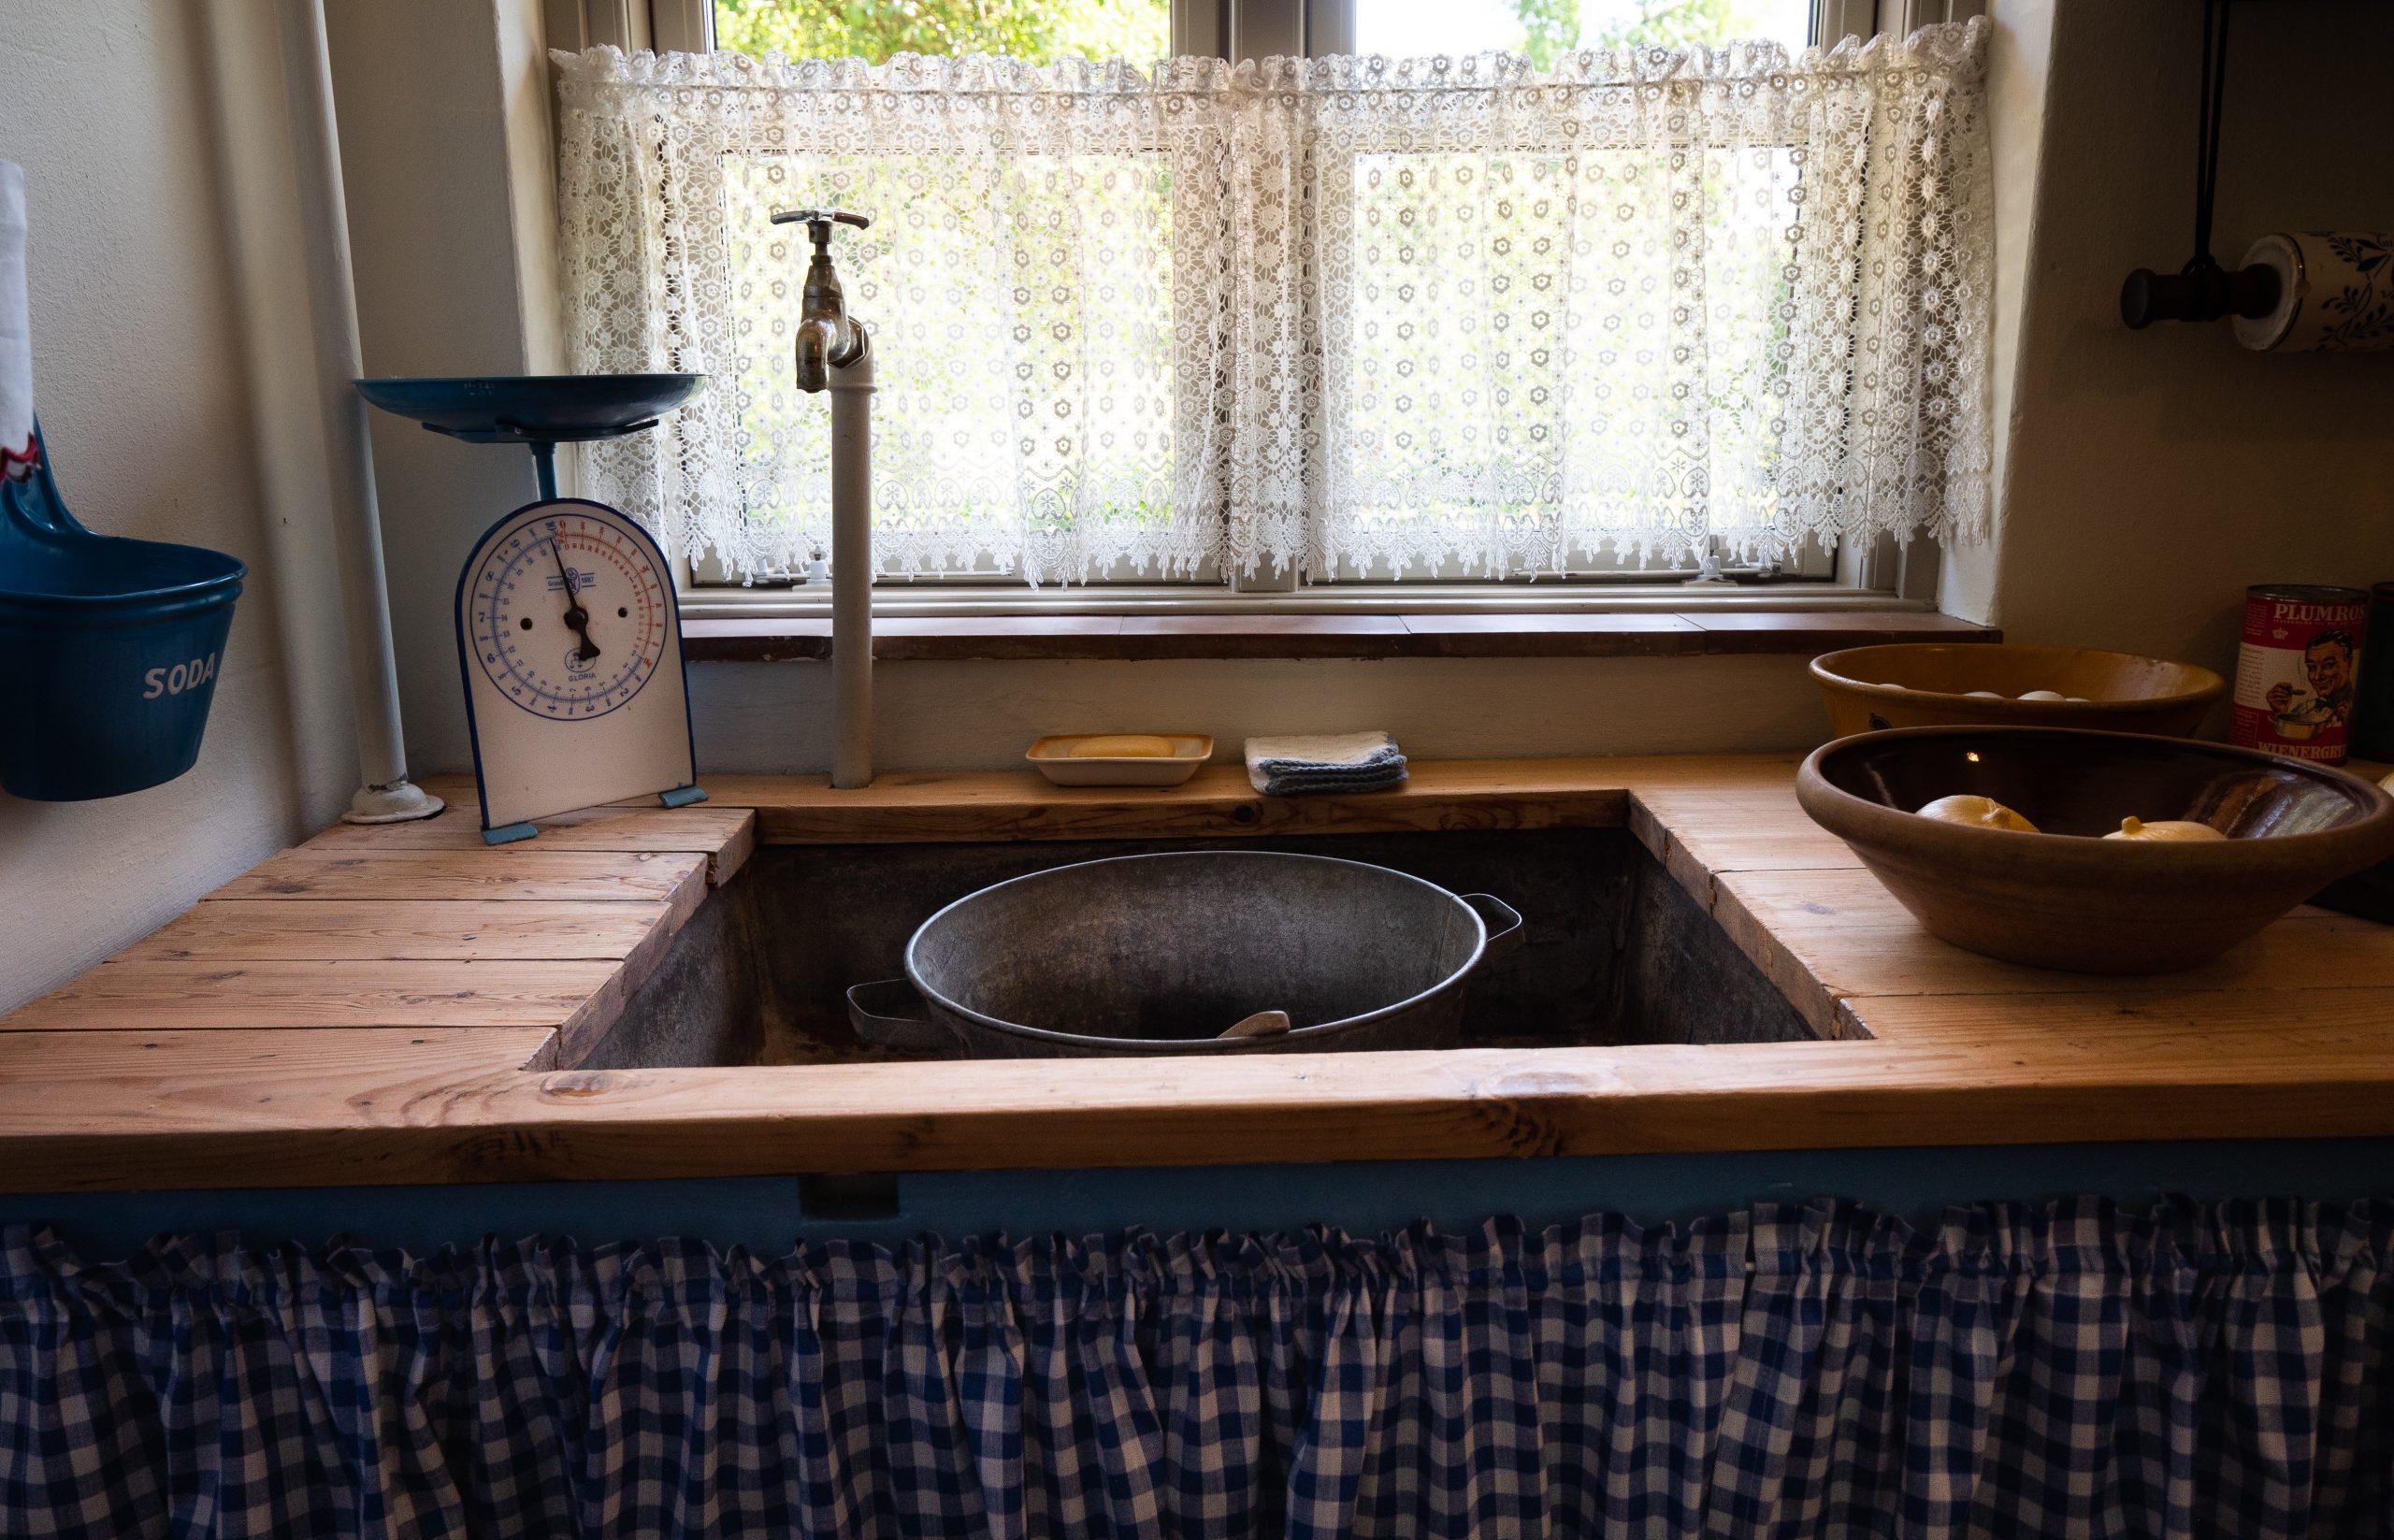 Gammeldags køkkenhåndvask og køkkenbord med frugtskål og vægt.